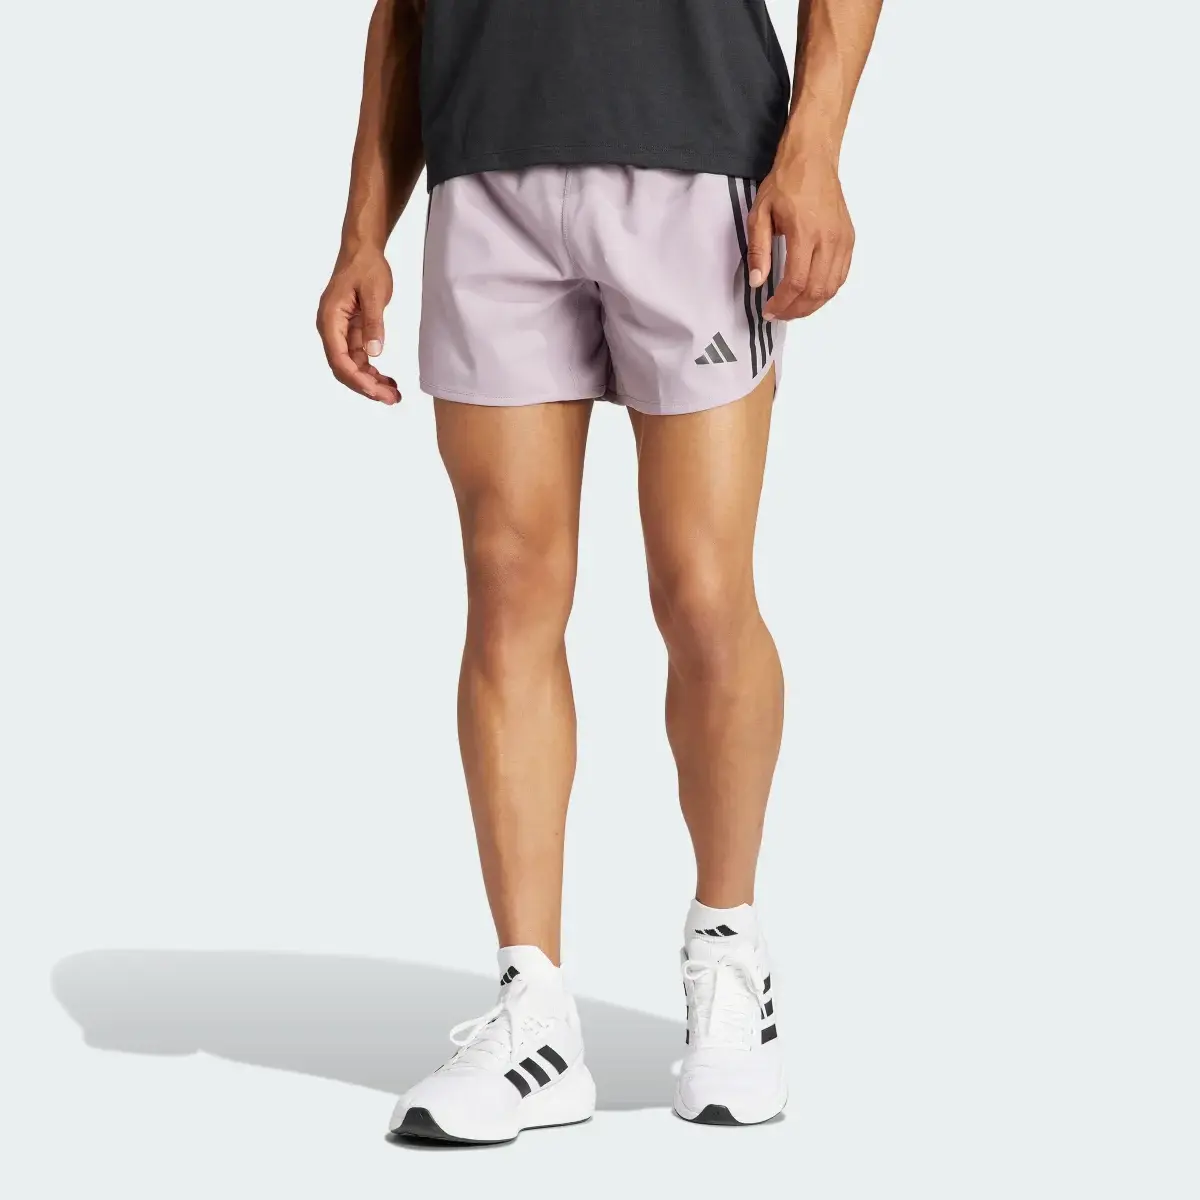 Adidas Own the Run 3-Stripes Shorts. 1